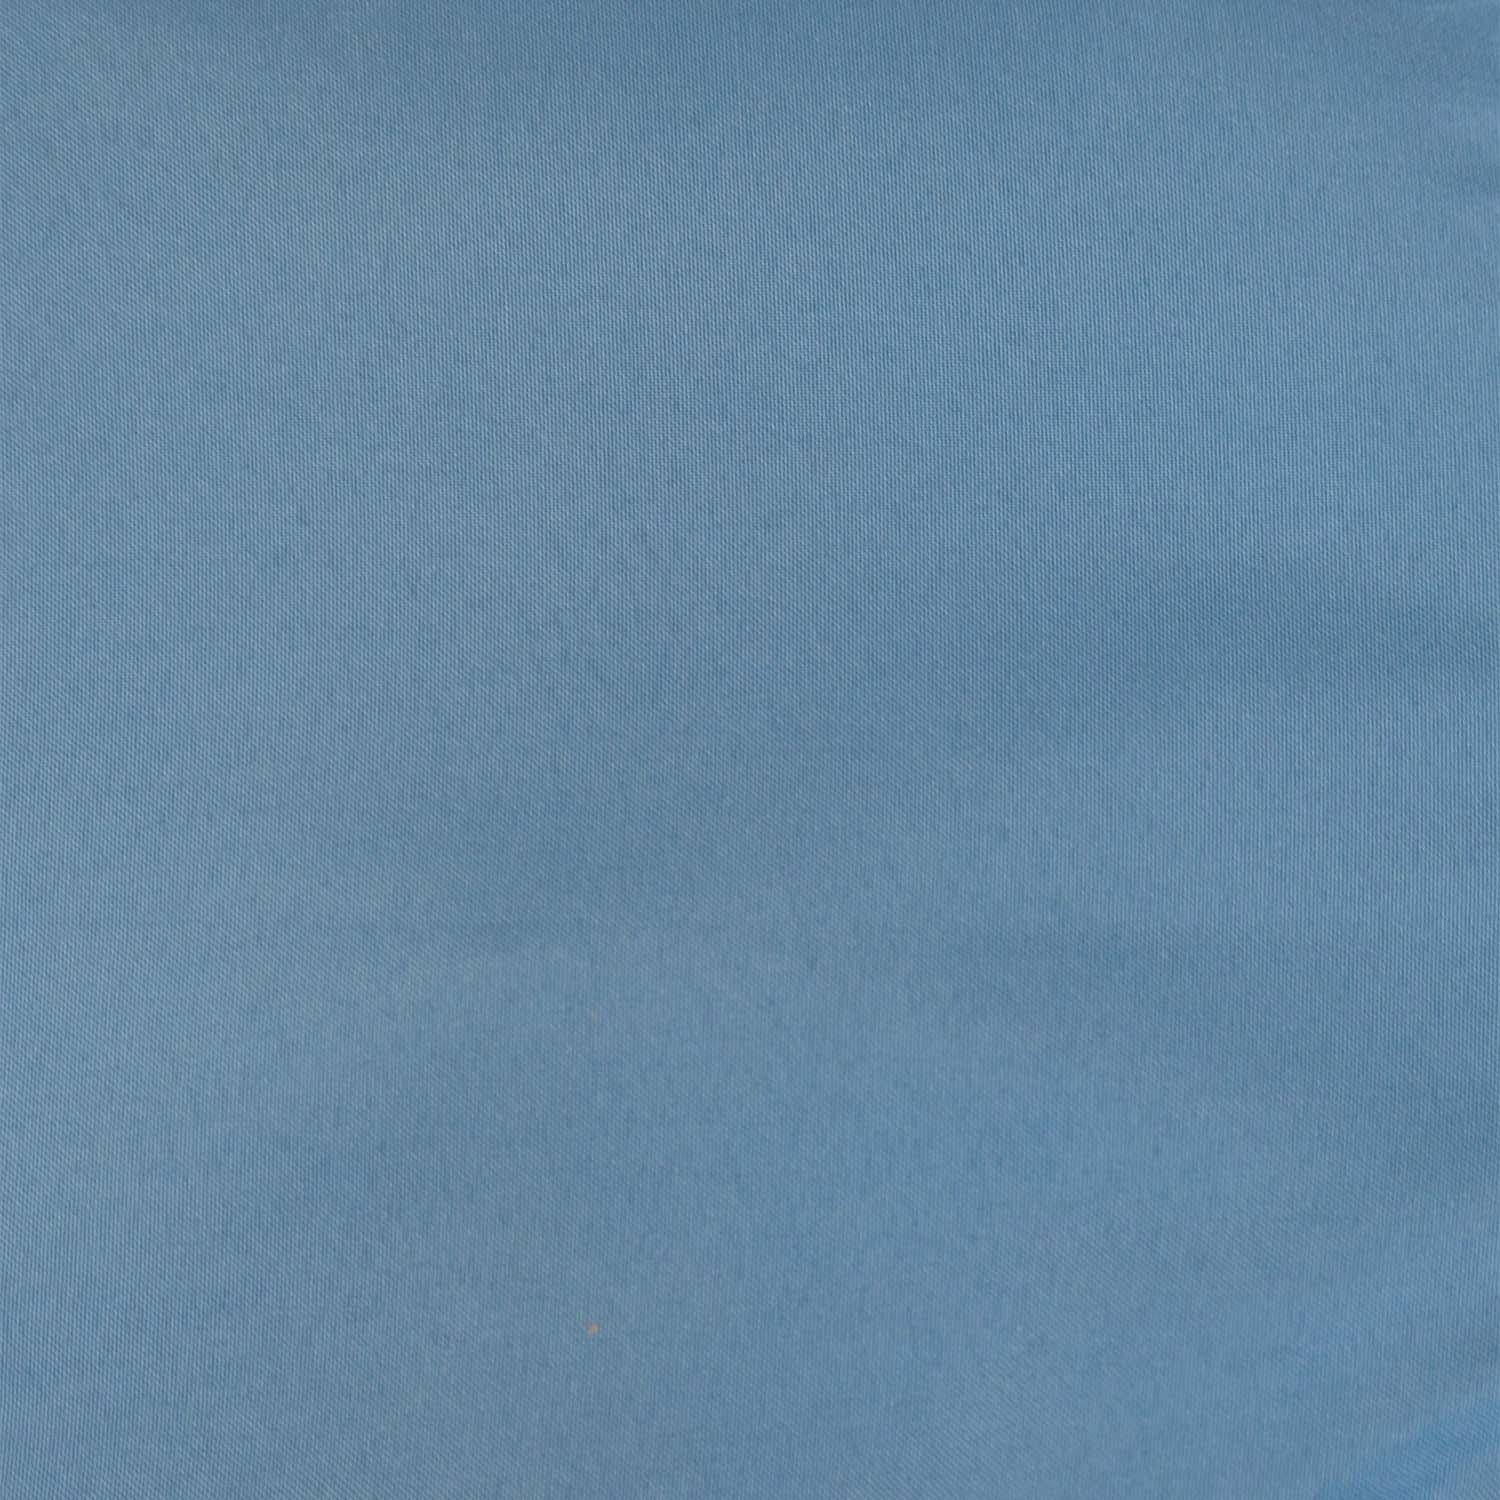 Voile d'ombrage bleu carré 300cmx300cm en polyester résistance UV Photo3